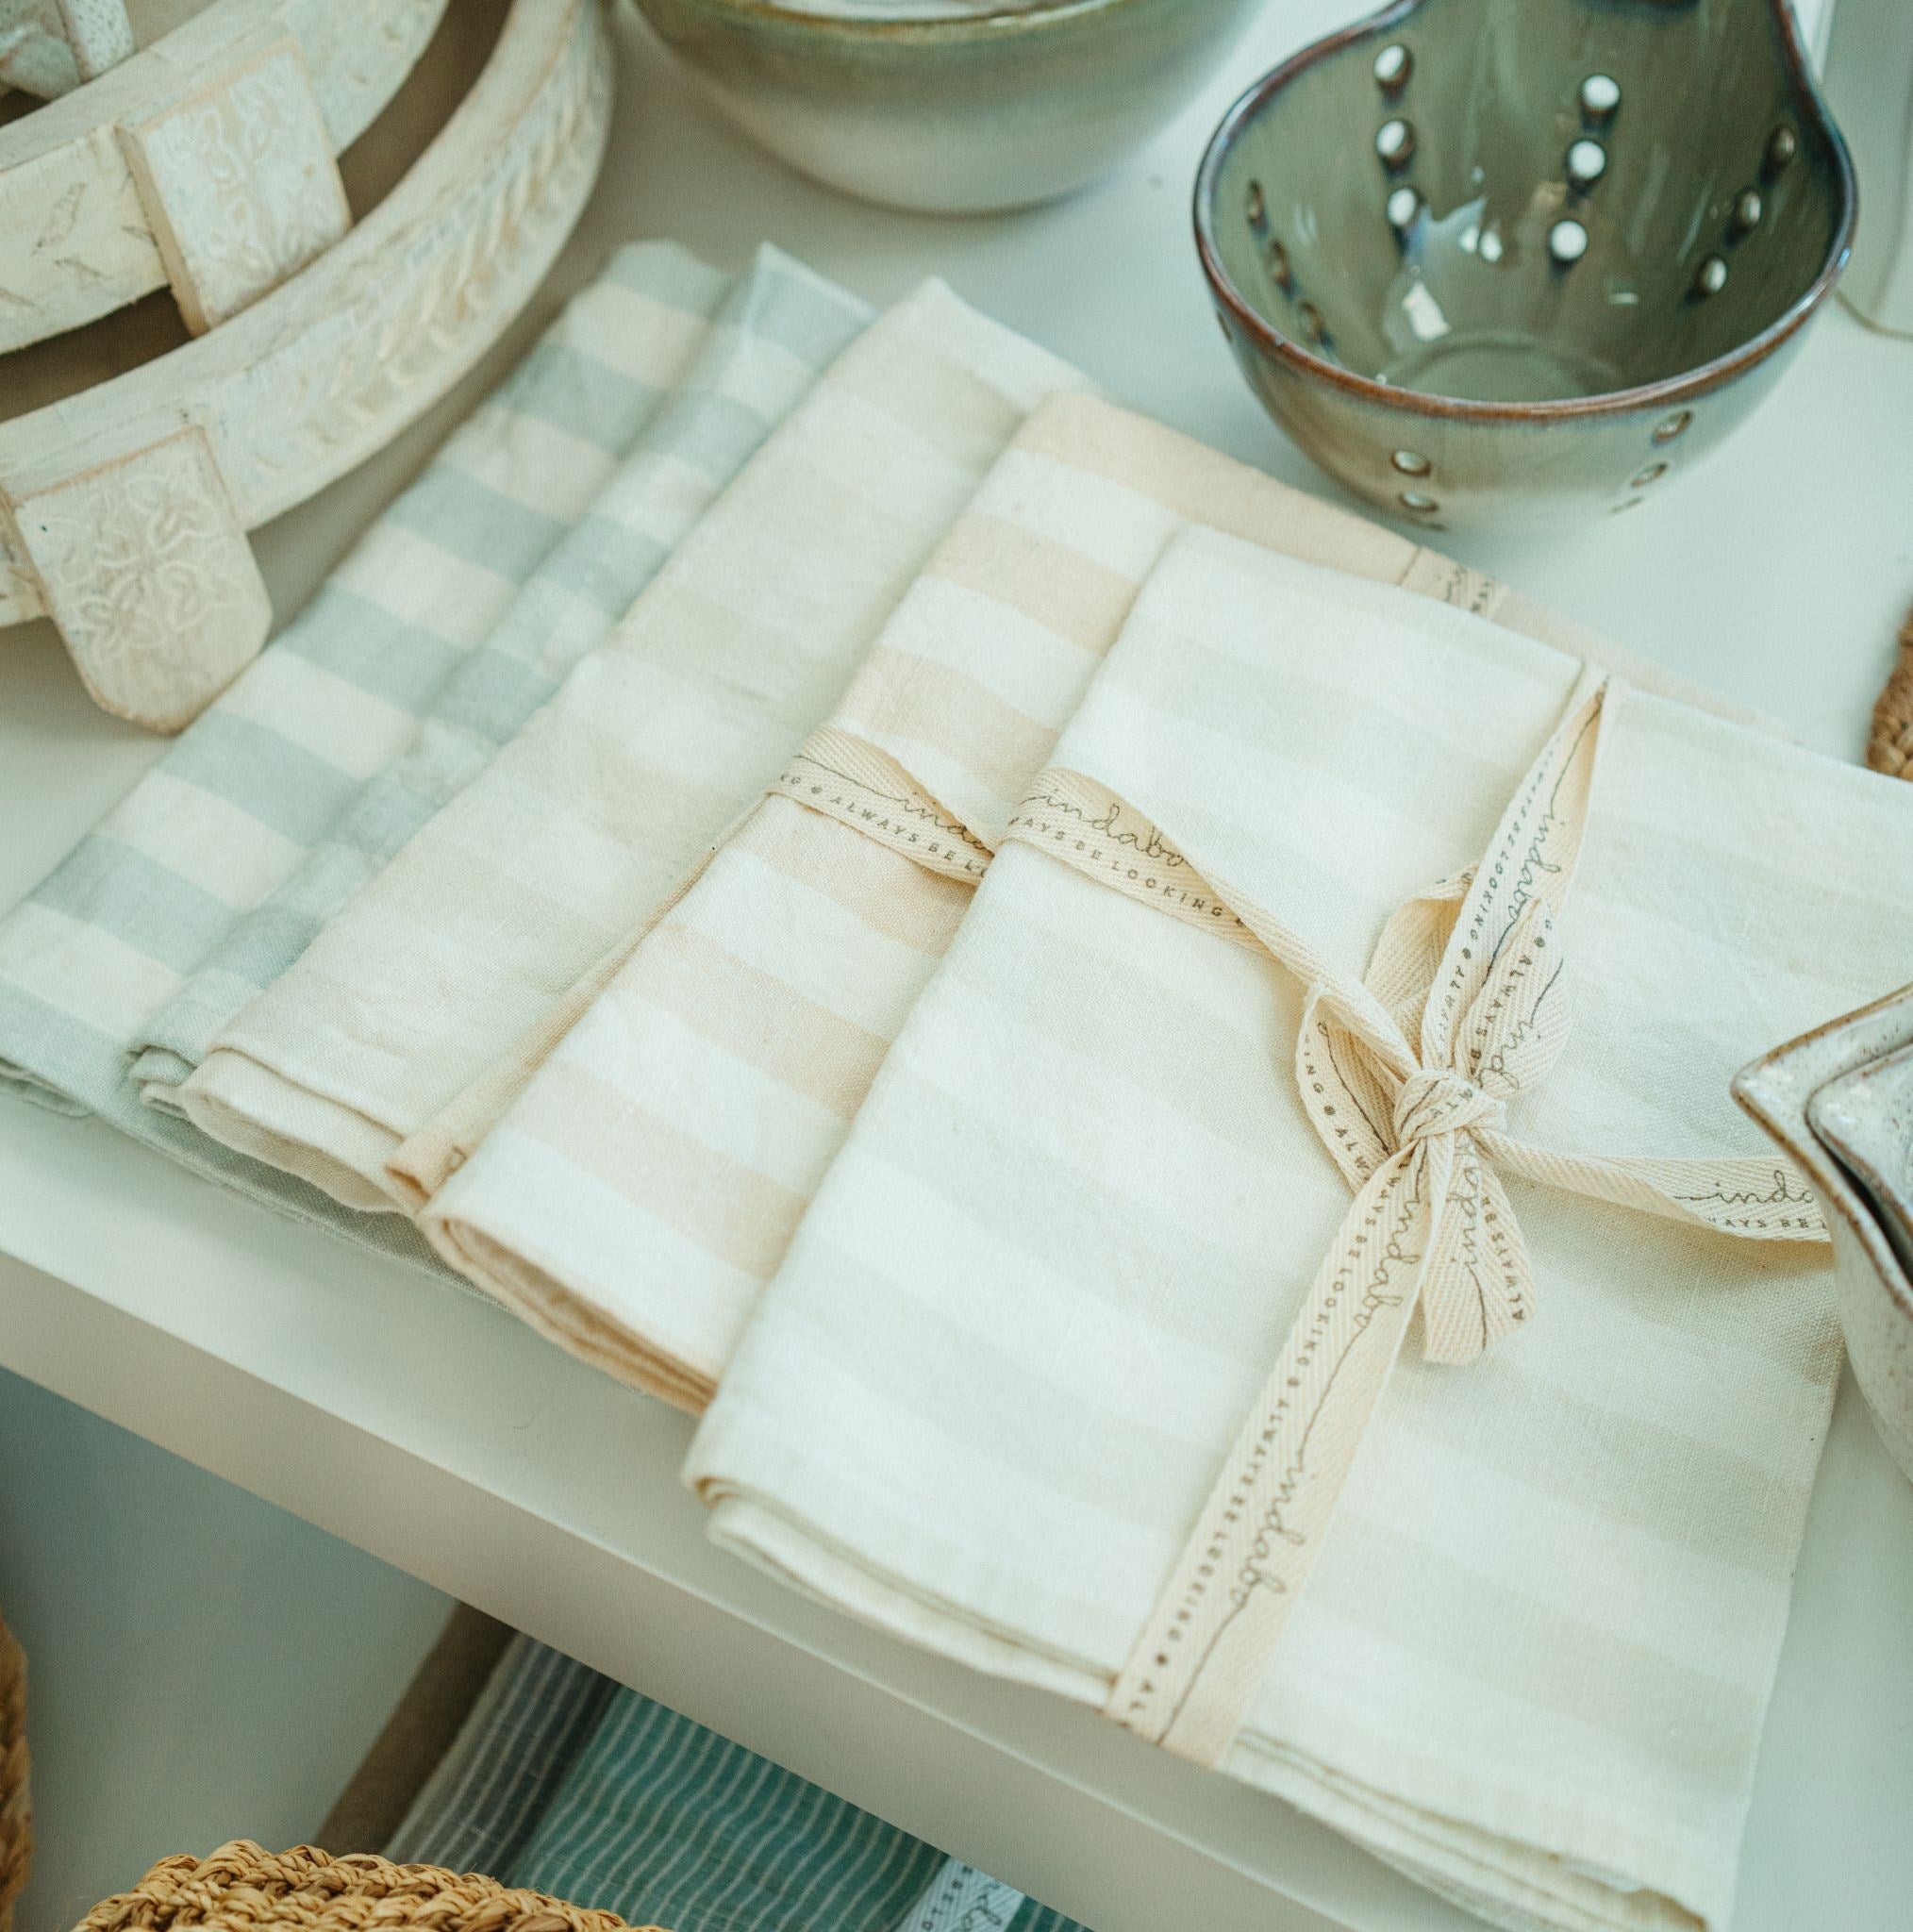 Gingham Linen Stripe Tea Towel (2)- Clay & Aqua